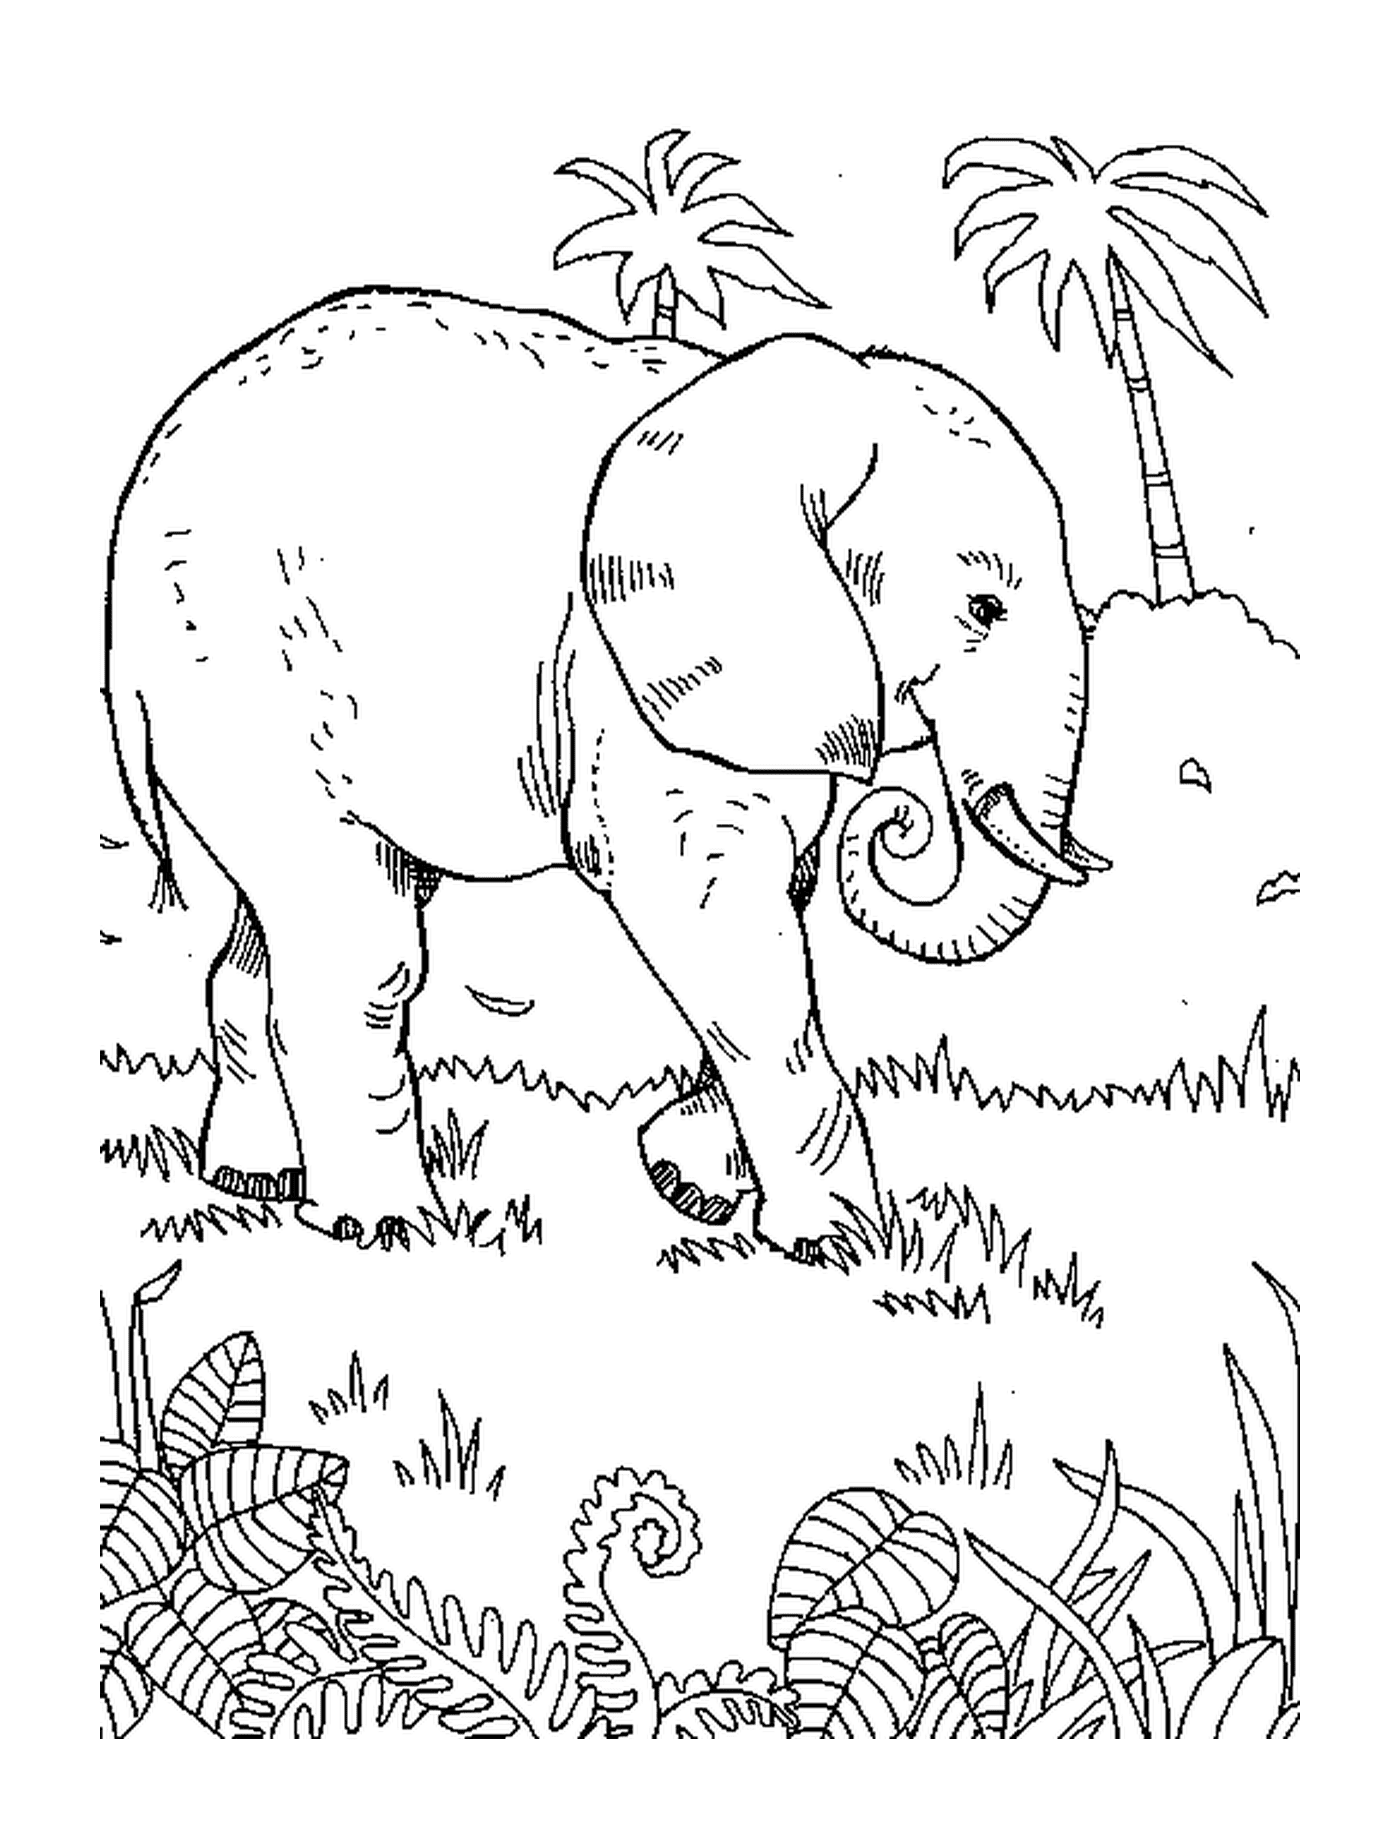  Un elefante caminando por la hierba cerca de una palmera 